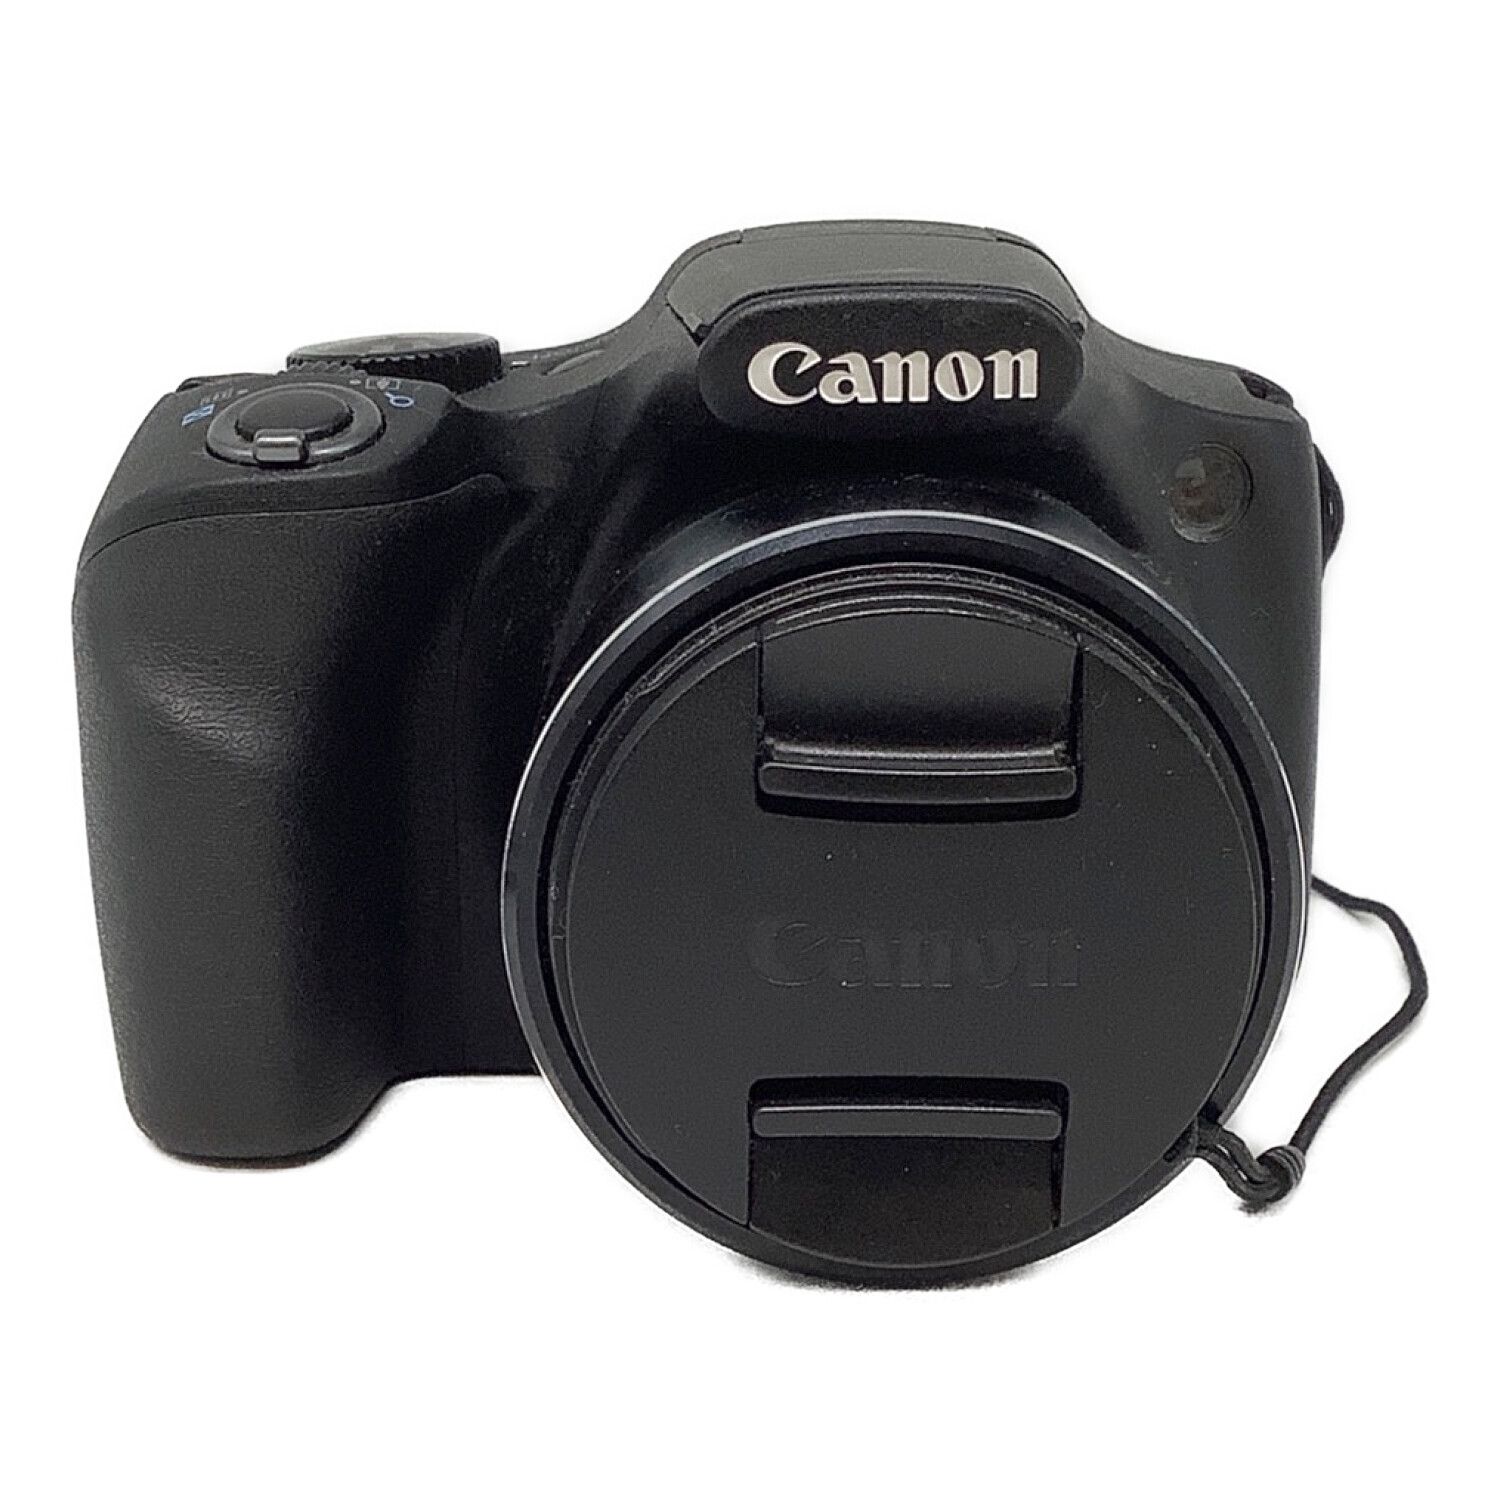 Canon PowerShot SX530 HS デジカメ ほぼ新品Canon - デジタルカメラ